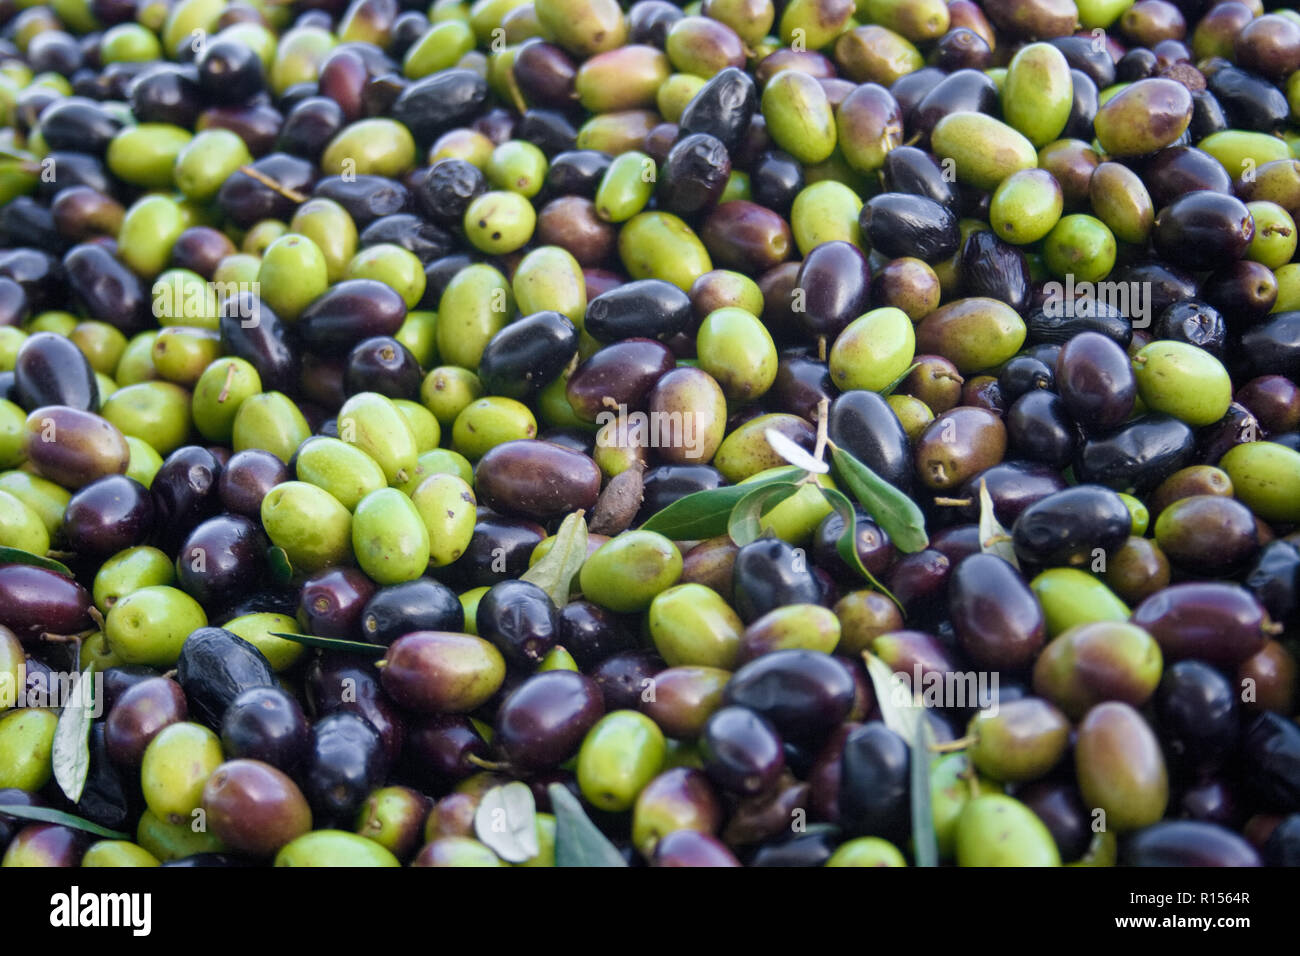 Grüne und schwarze Oliven bereit, an der Mühle Olivenöl zu erhalten, in der Nähe verarbeitet werden Stockfoto